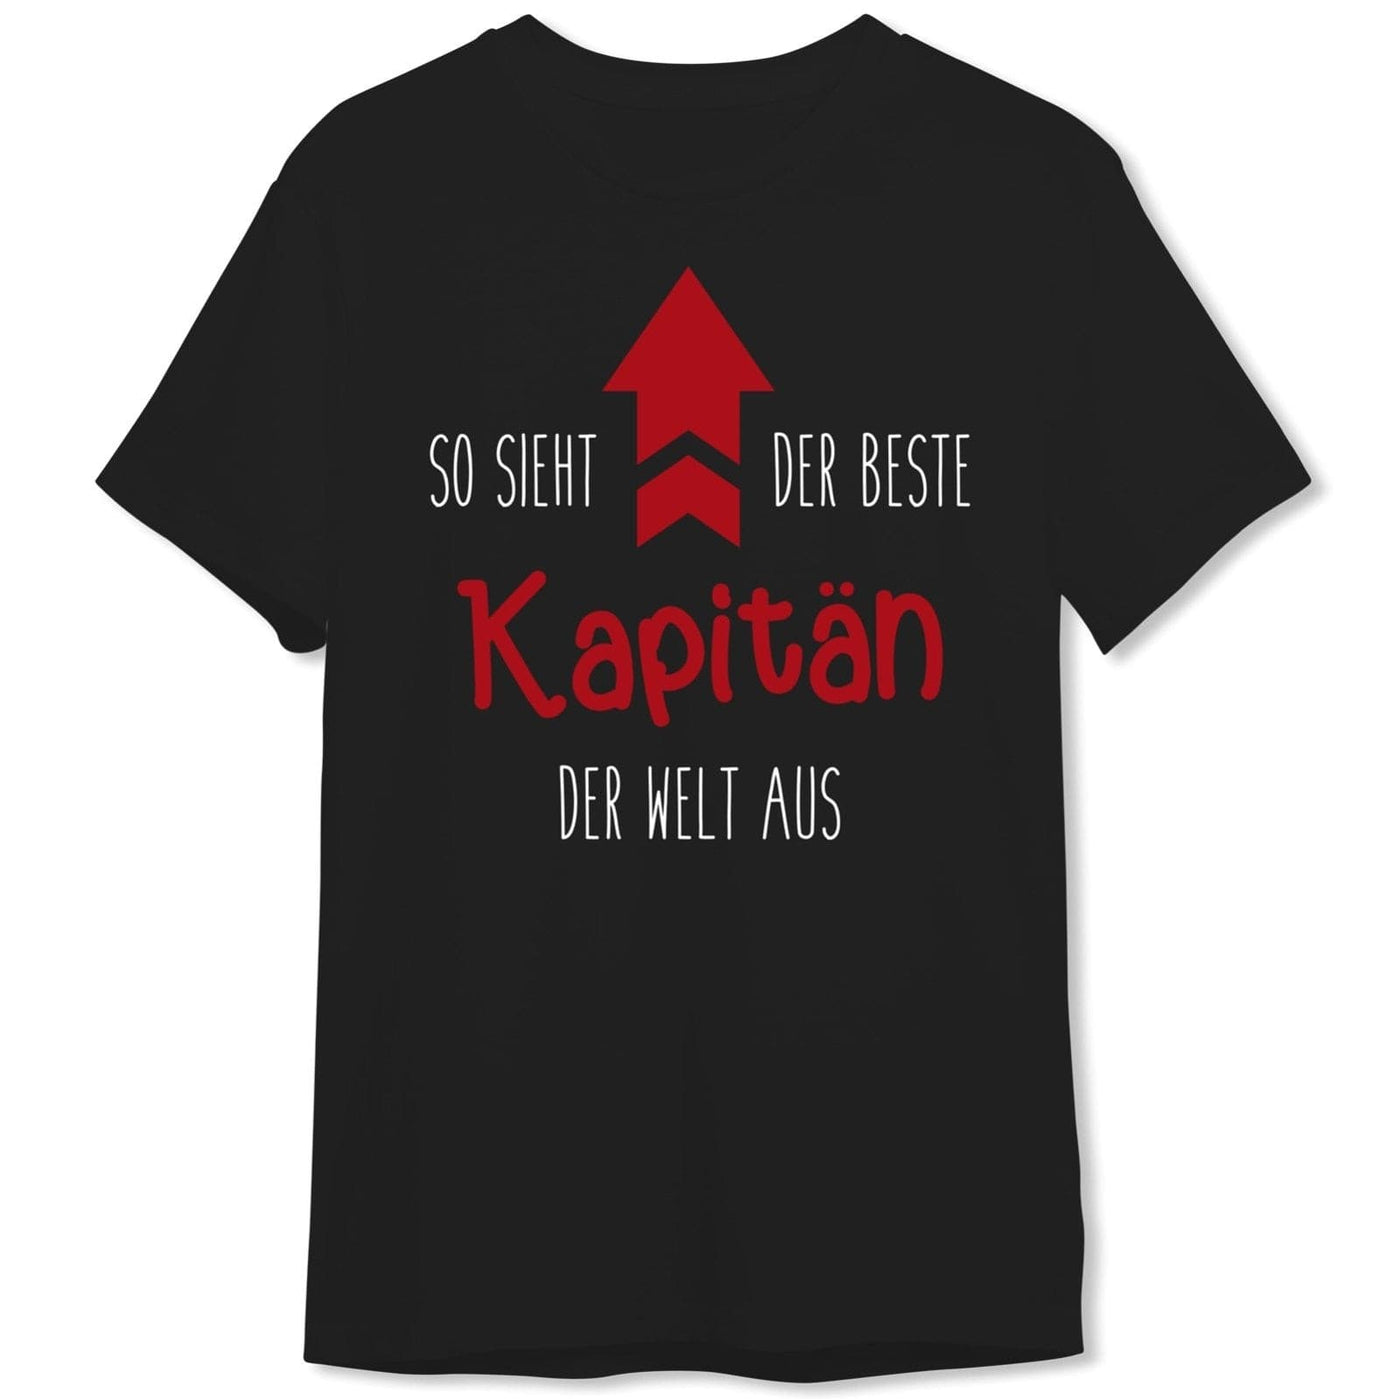 Bild: T-Shirt Herren - So sieht der beste Kapitän der Welt aus Geschenkidee